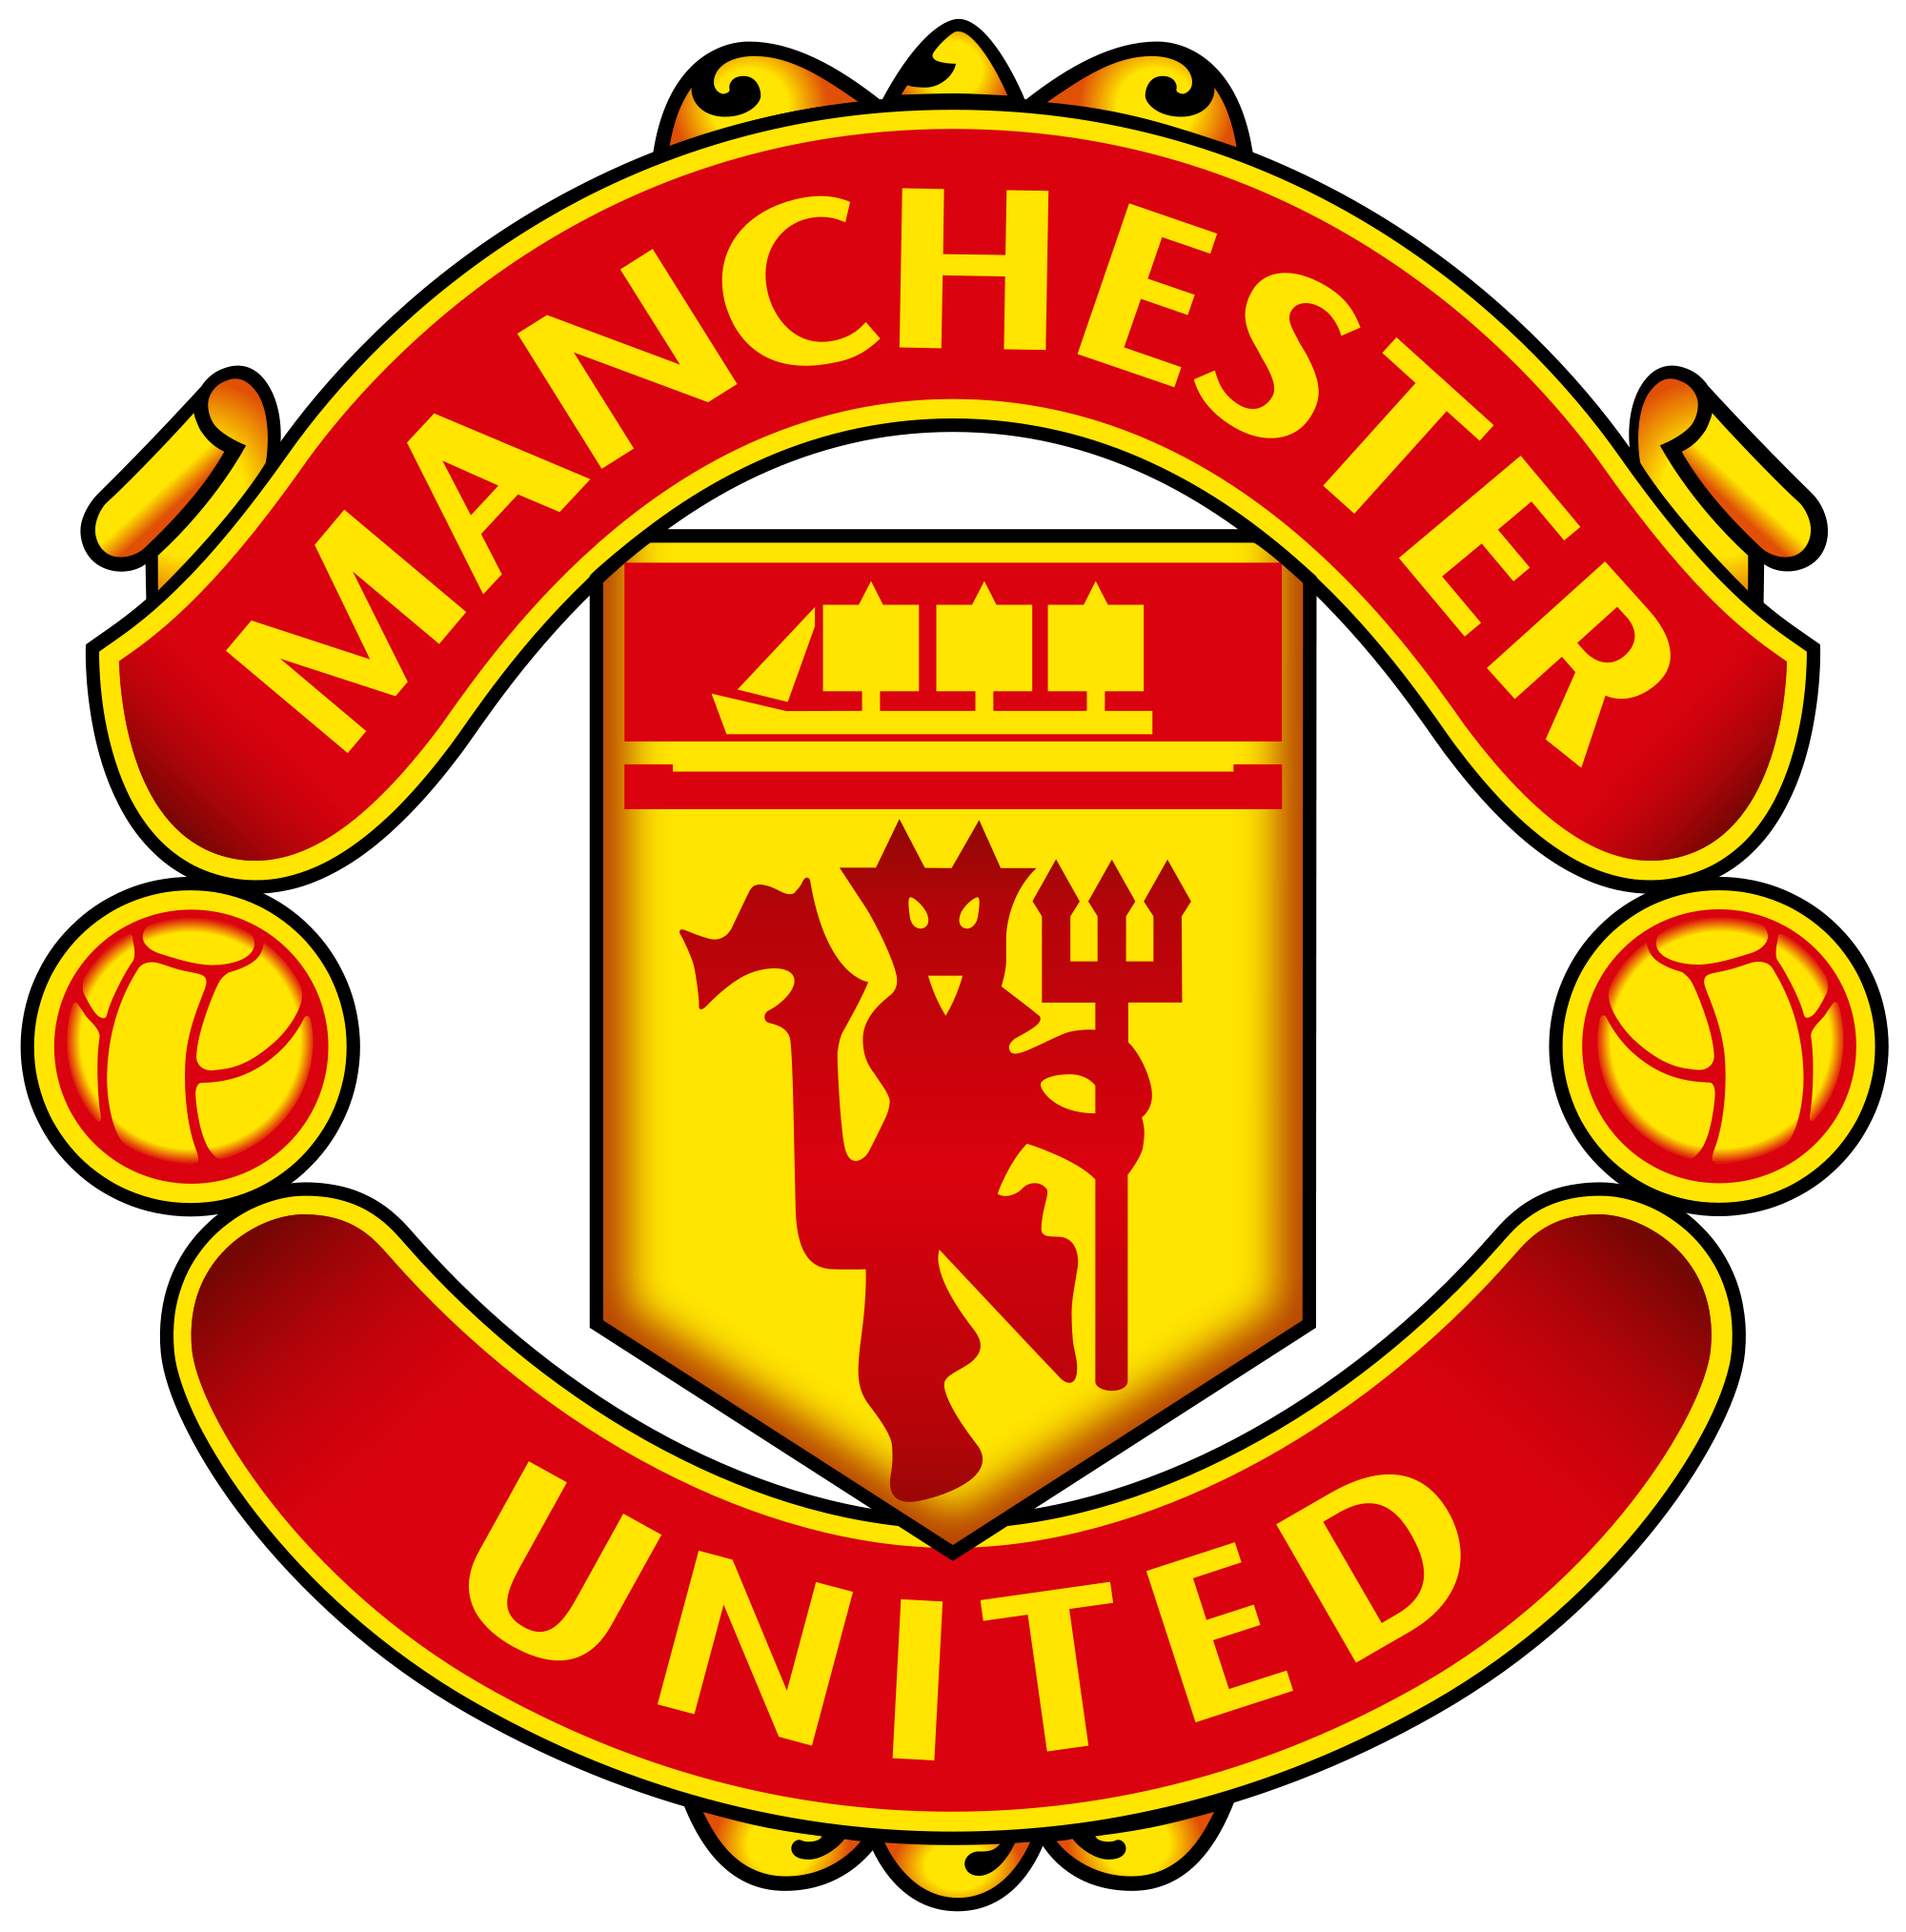 manchester united logo football club